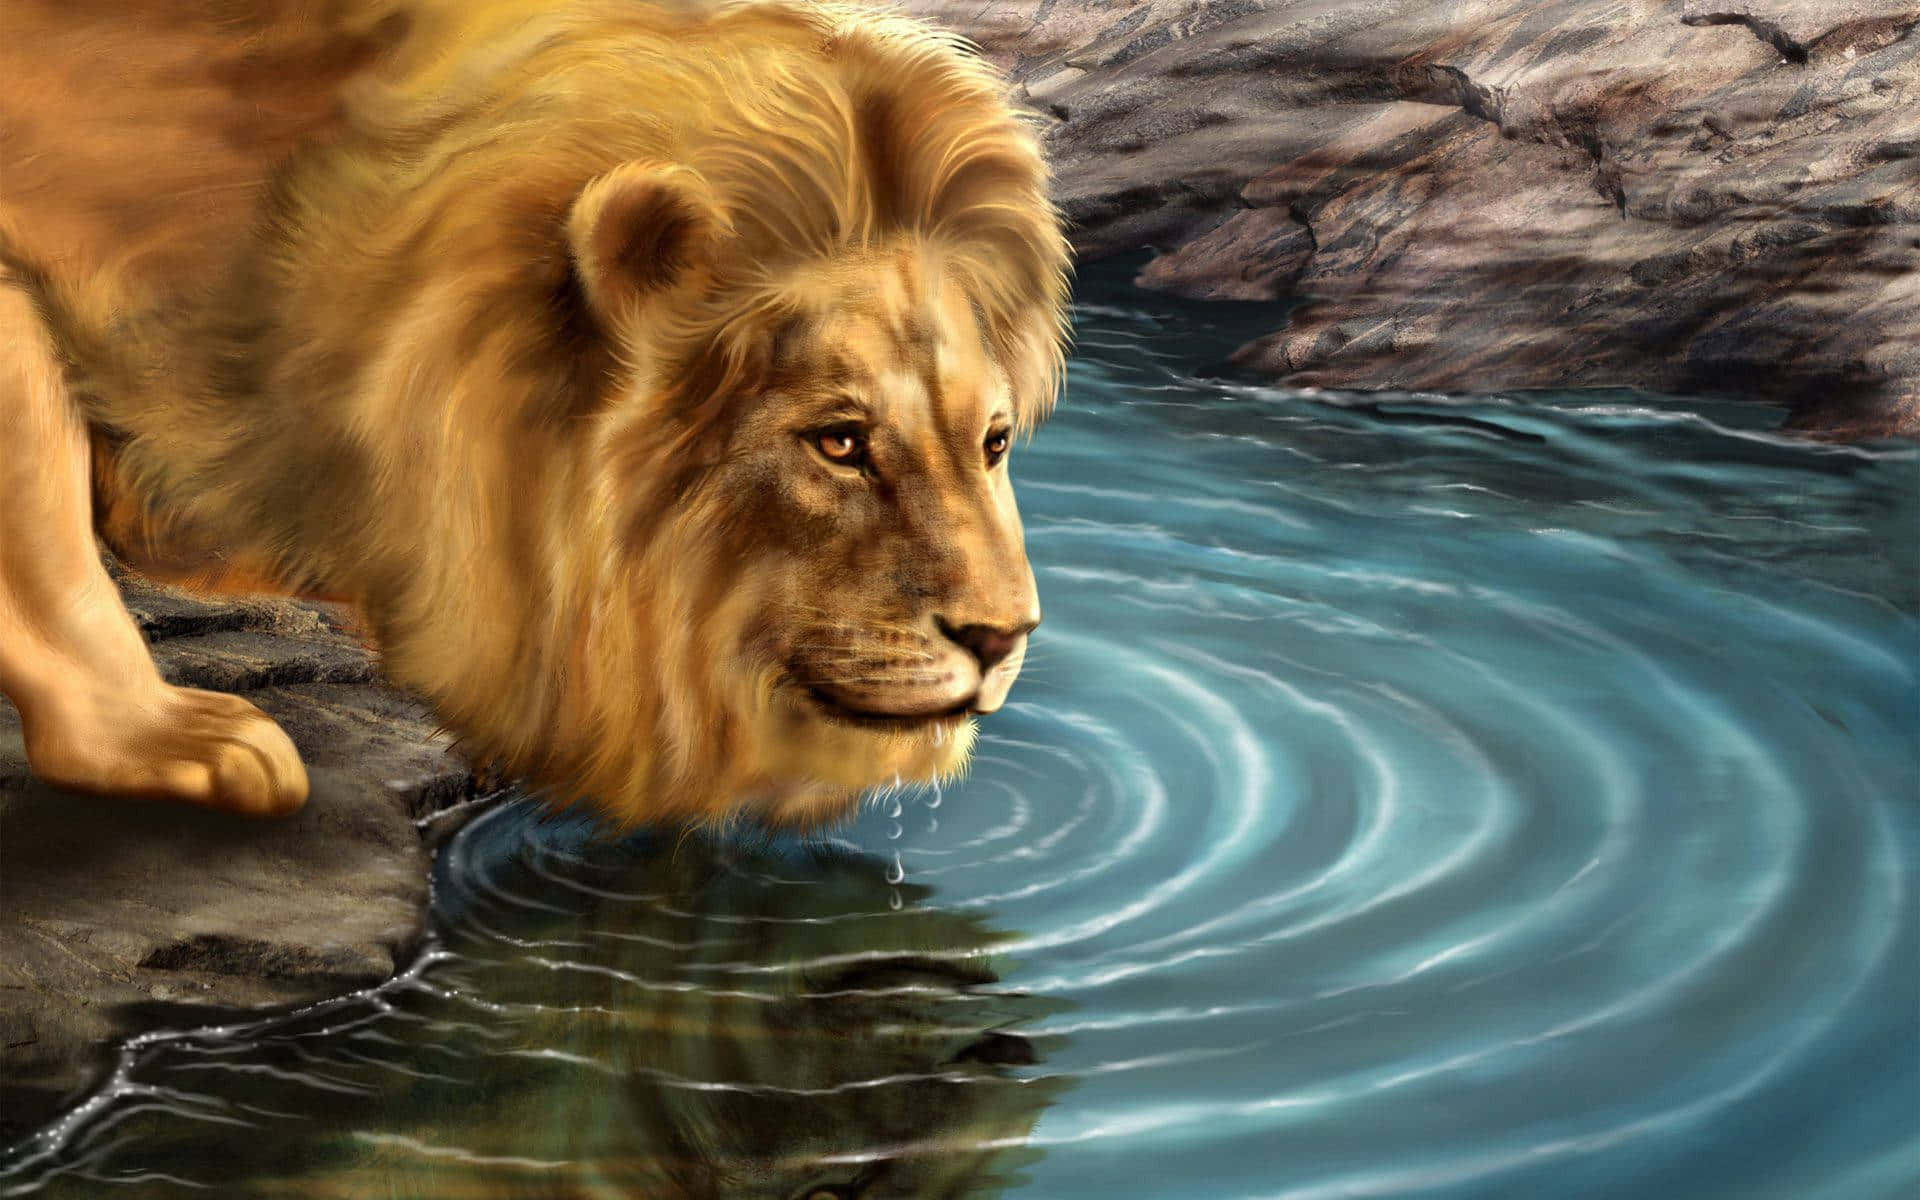 Majestic Lion in a Vibrant 3D Landscape Wallpaper